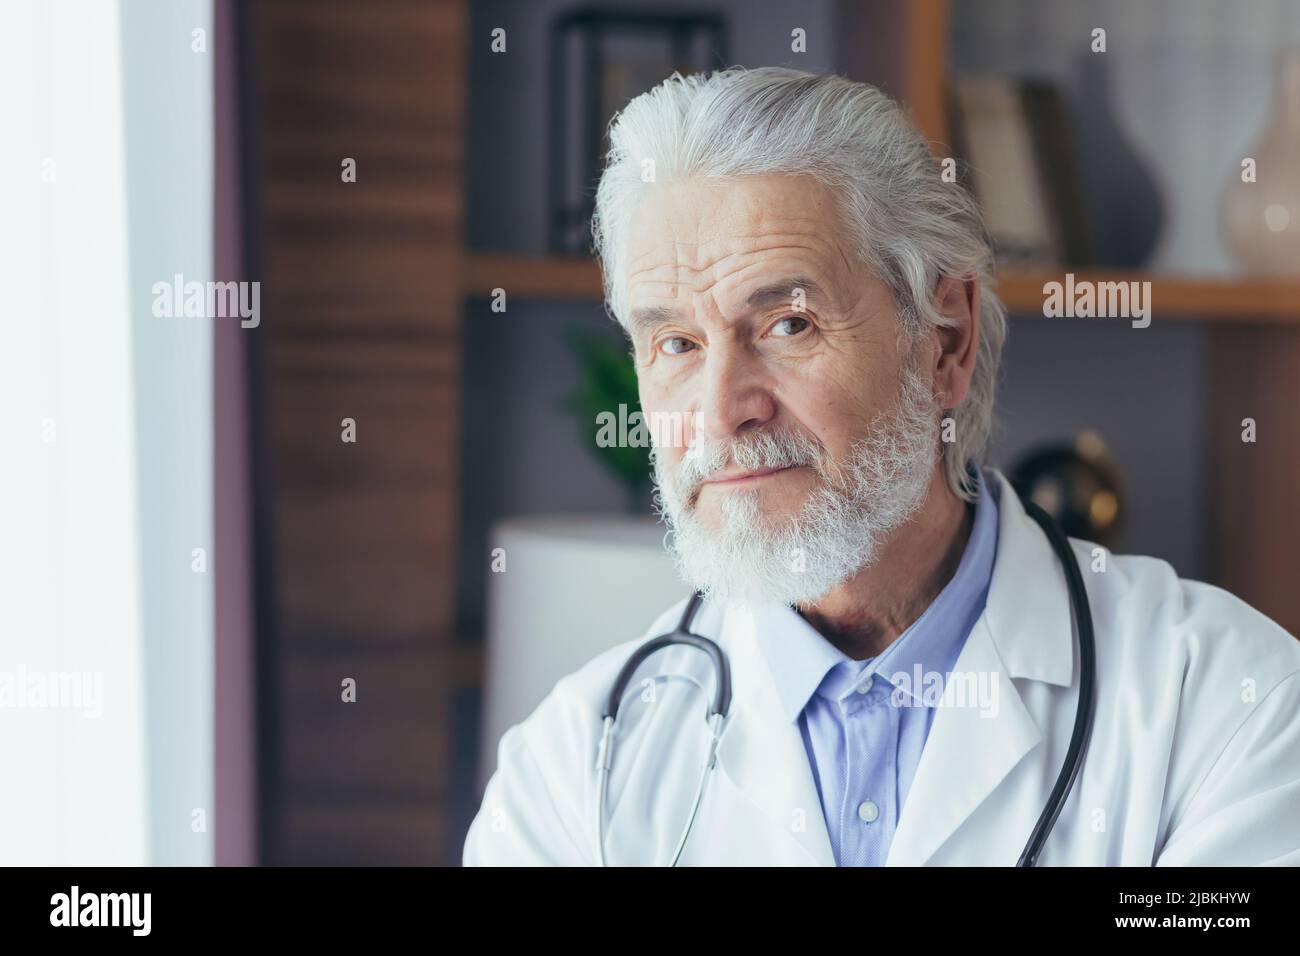 ritratto di primo piano di un medico esperto, un uomo dai capelli grigi che guarda nella macchina fotografica, lavora in un ufficio privato, vestito in un medico Foto Stock